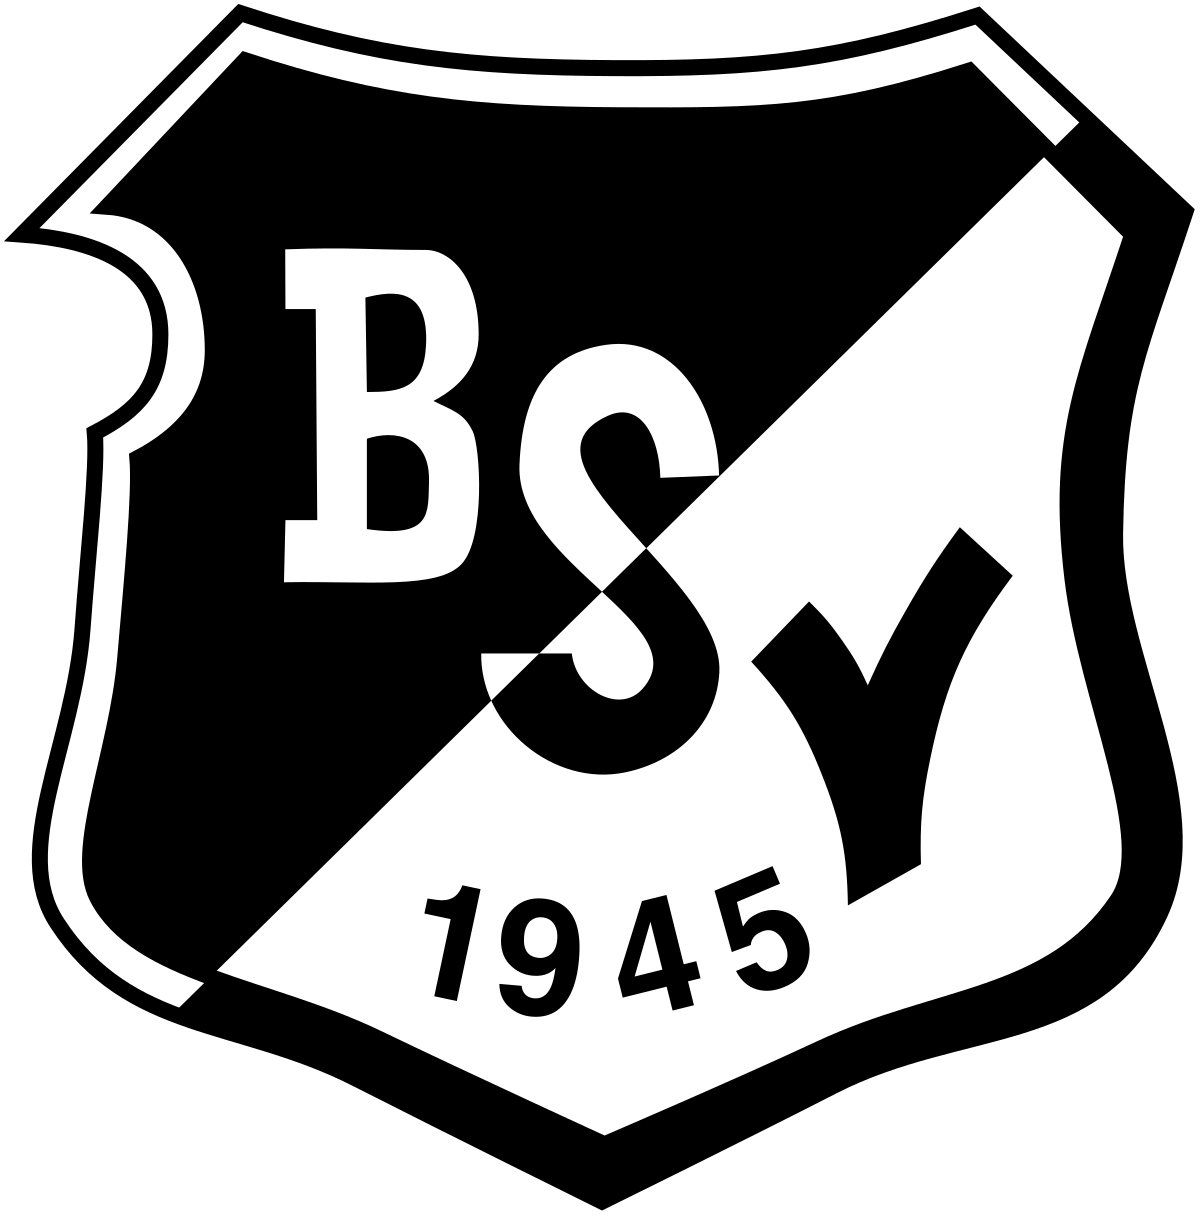 Wappen Bramfelder SV 1945